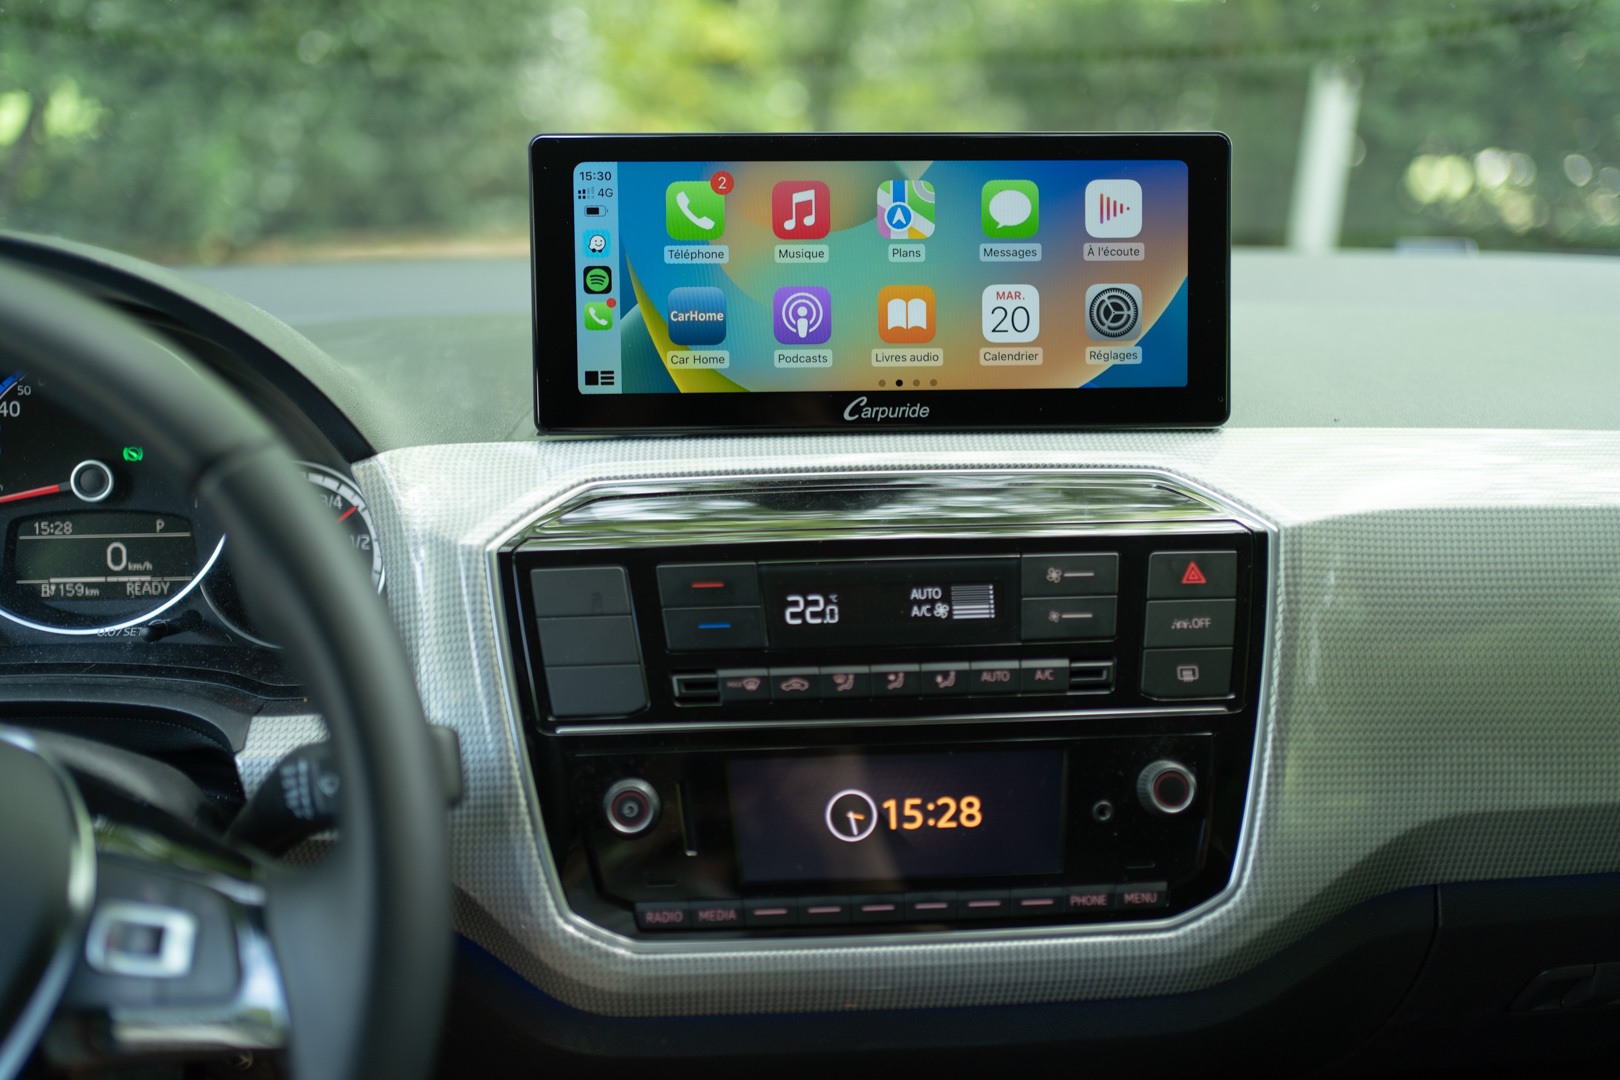 Sony présente un écran GPS multimédia pour voiture, permettant d